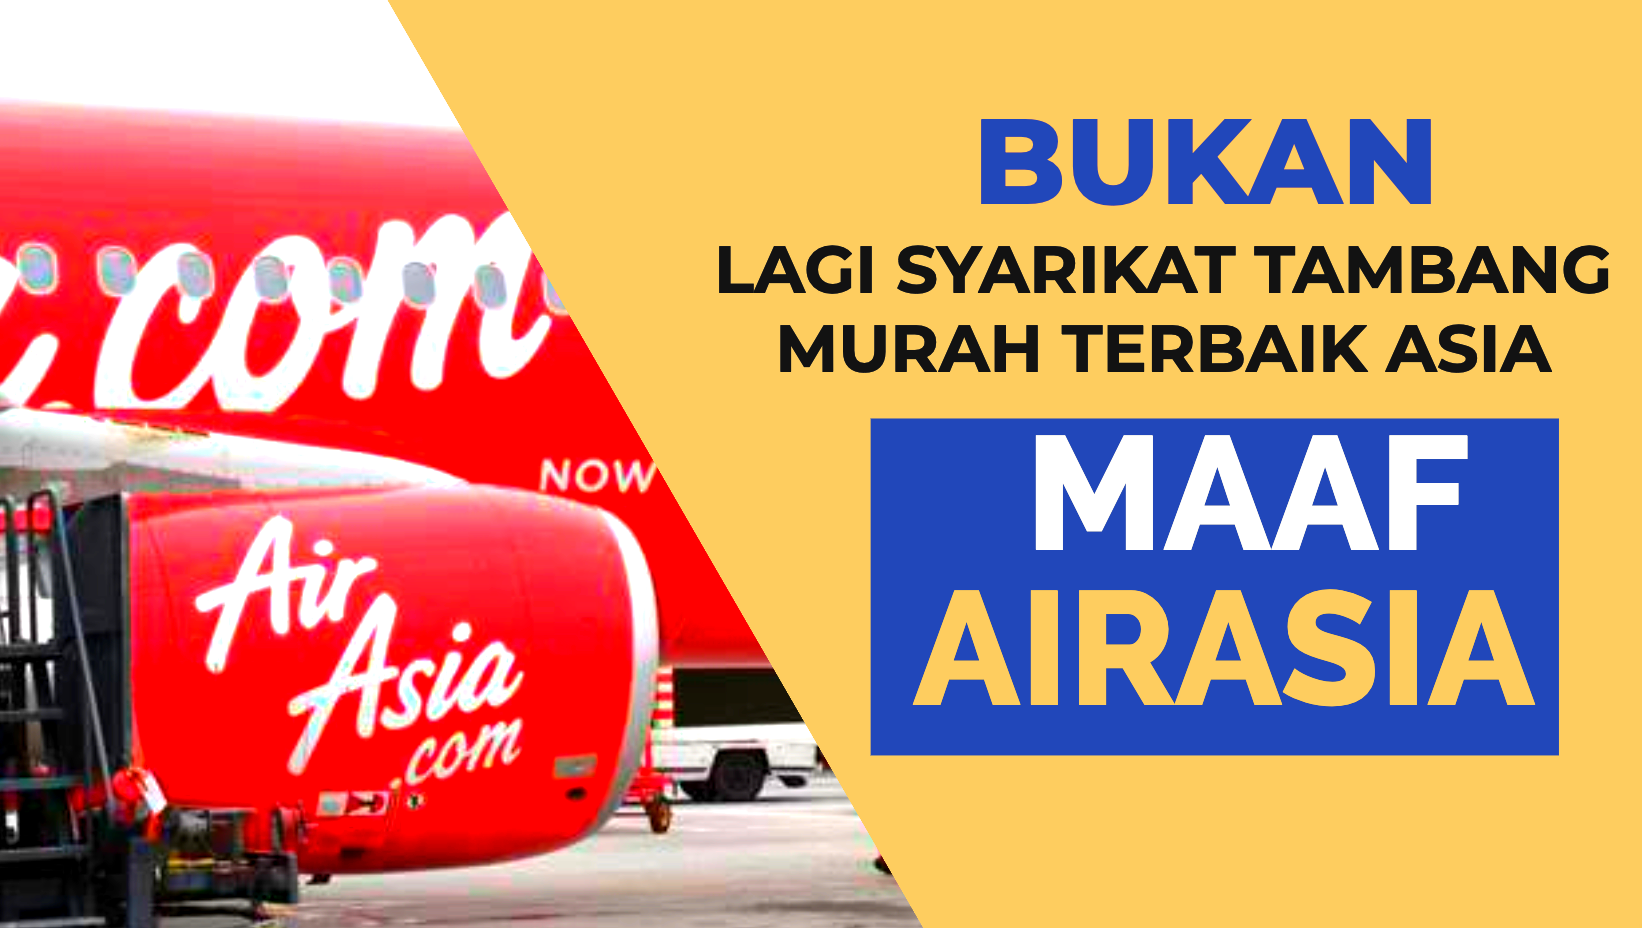 Maaf AirAsia bukan lagi syarikat penerbangan tambang murah terbaik